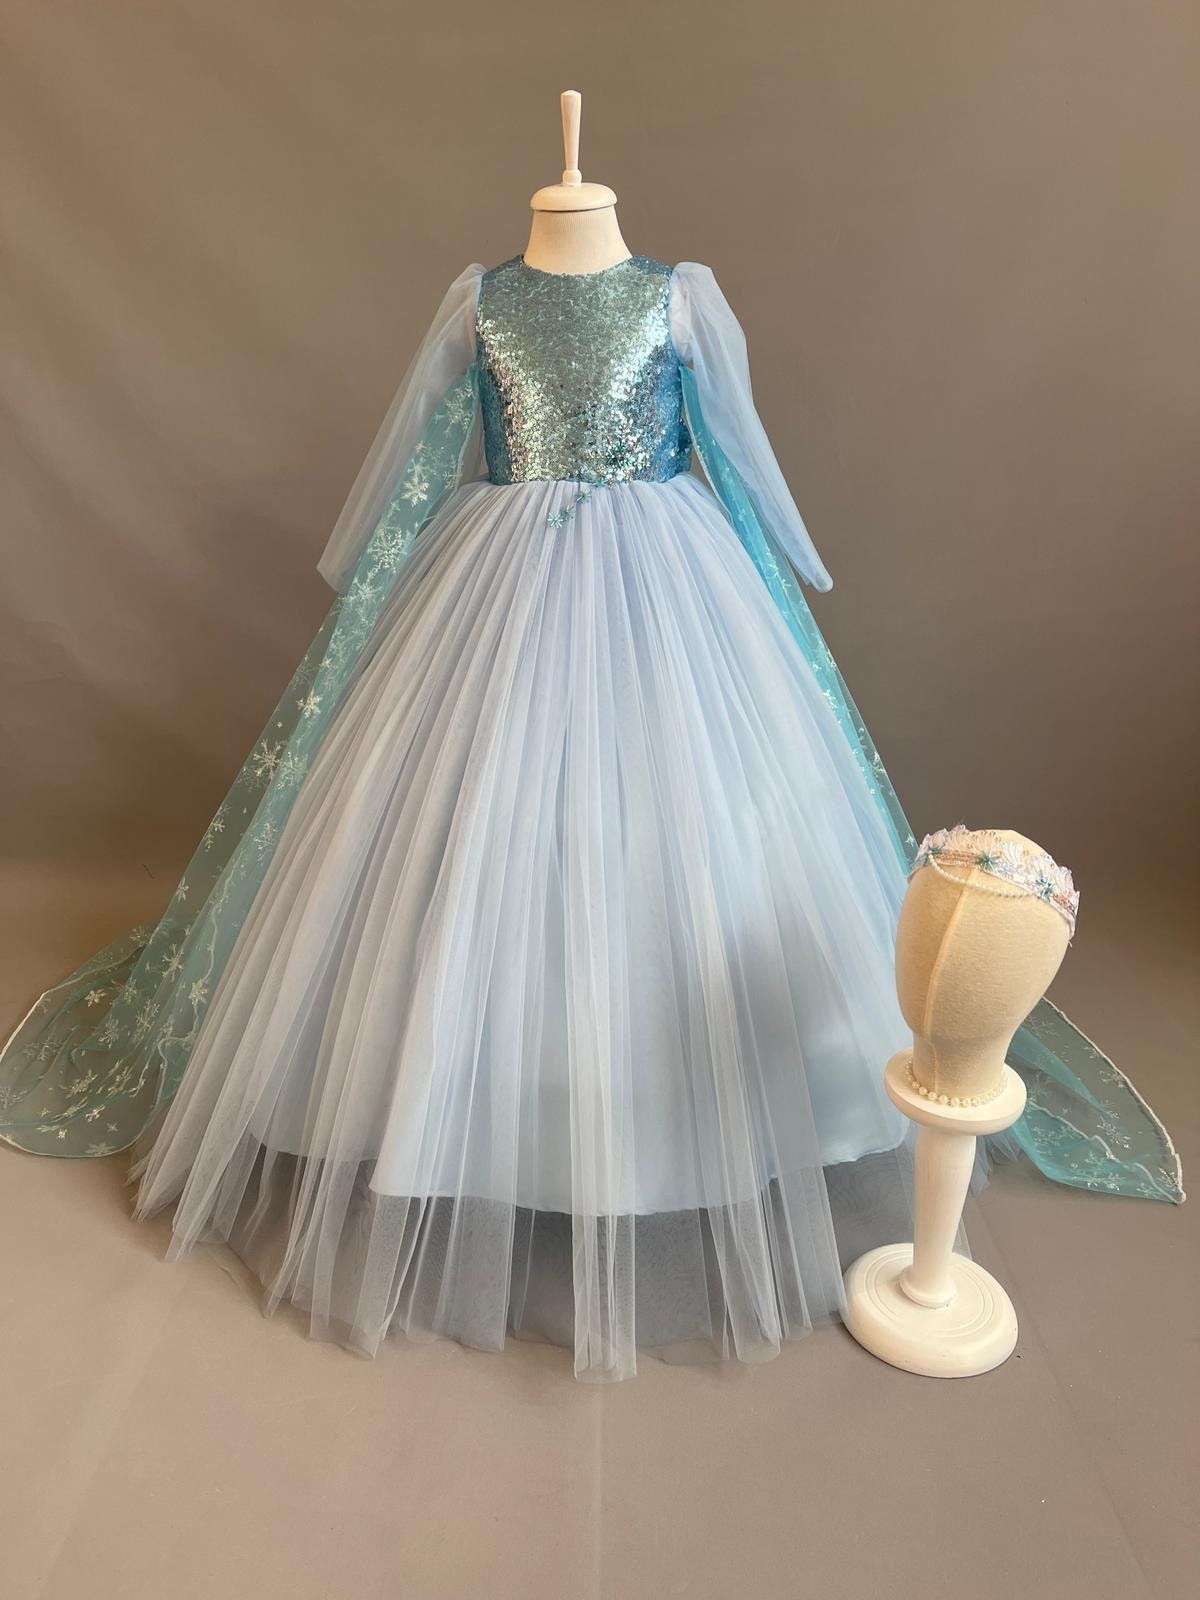 Buy Frozen Elsa Inspired Costume for Girl, Elsa Birthday Party Dress Online  in India - Etsy